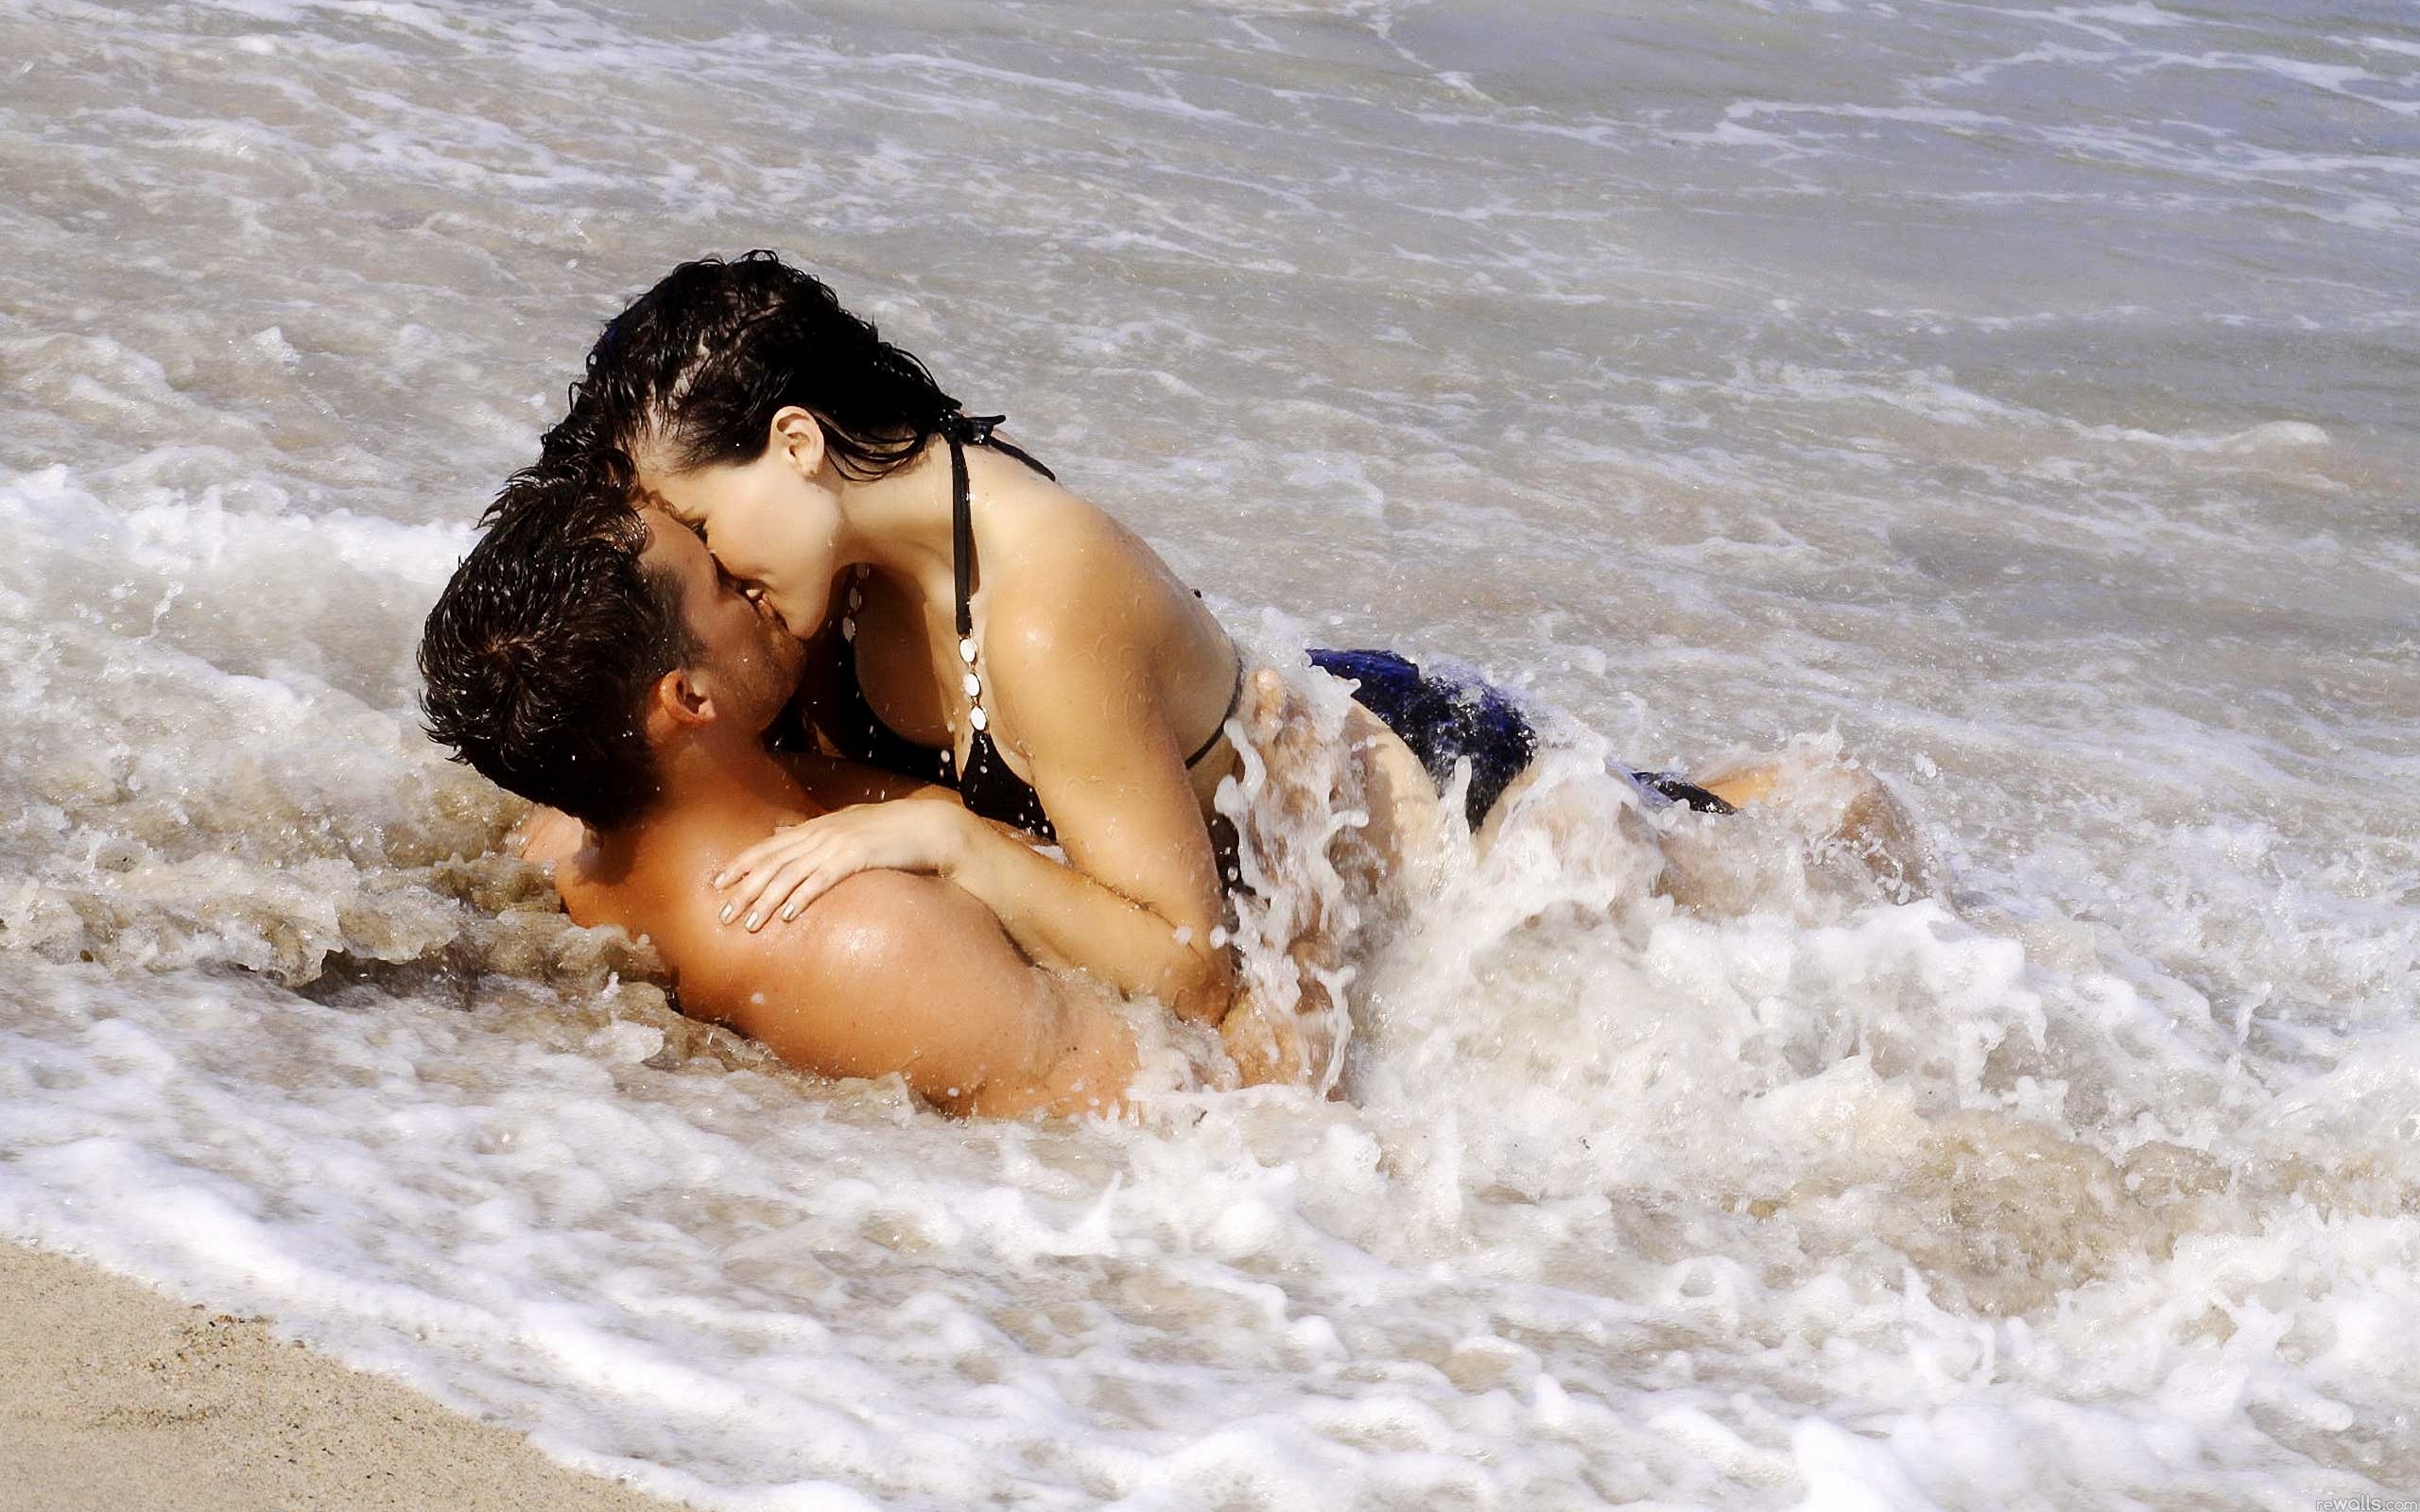 Пара весело проводит время на пляже и в гостинице порно фото